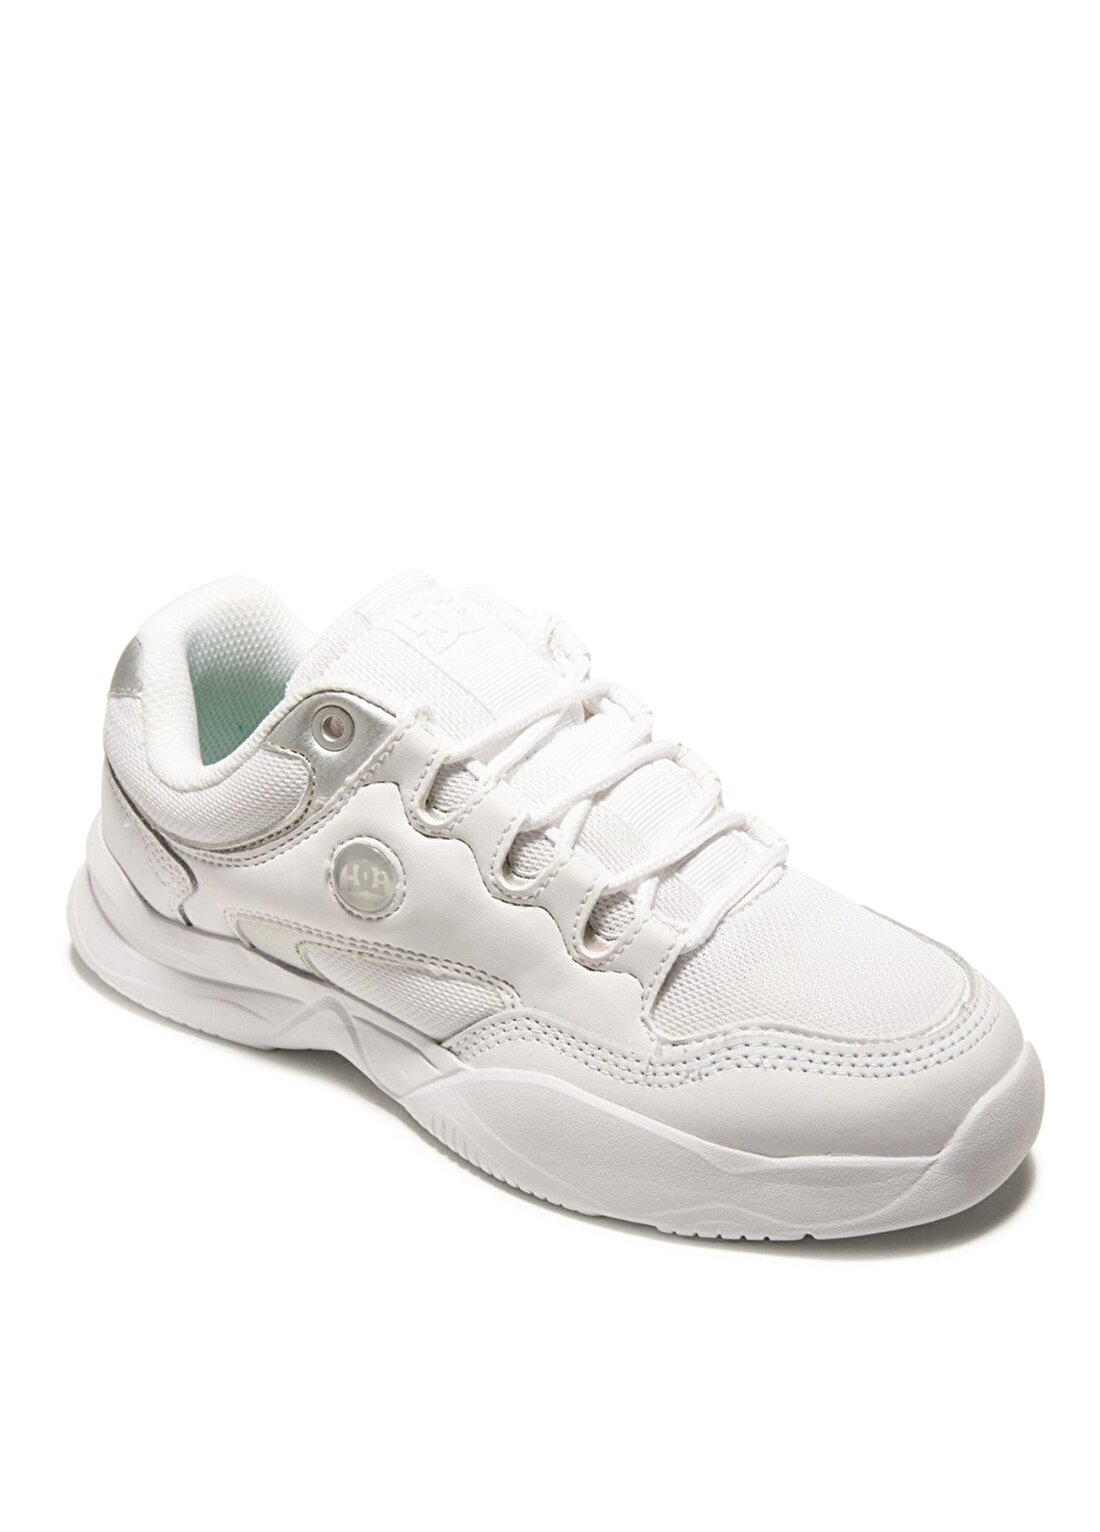 Dc Shoes Beyaz - Gümüş Kadın Lifestyle Ayakkabı ADJS700091-WS4 DECEL